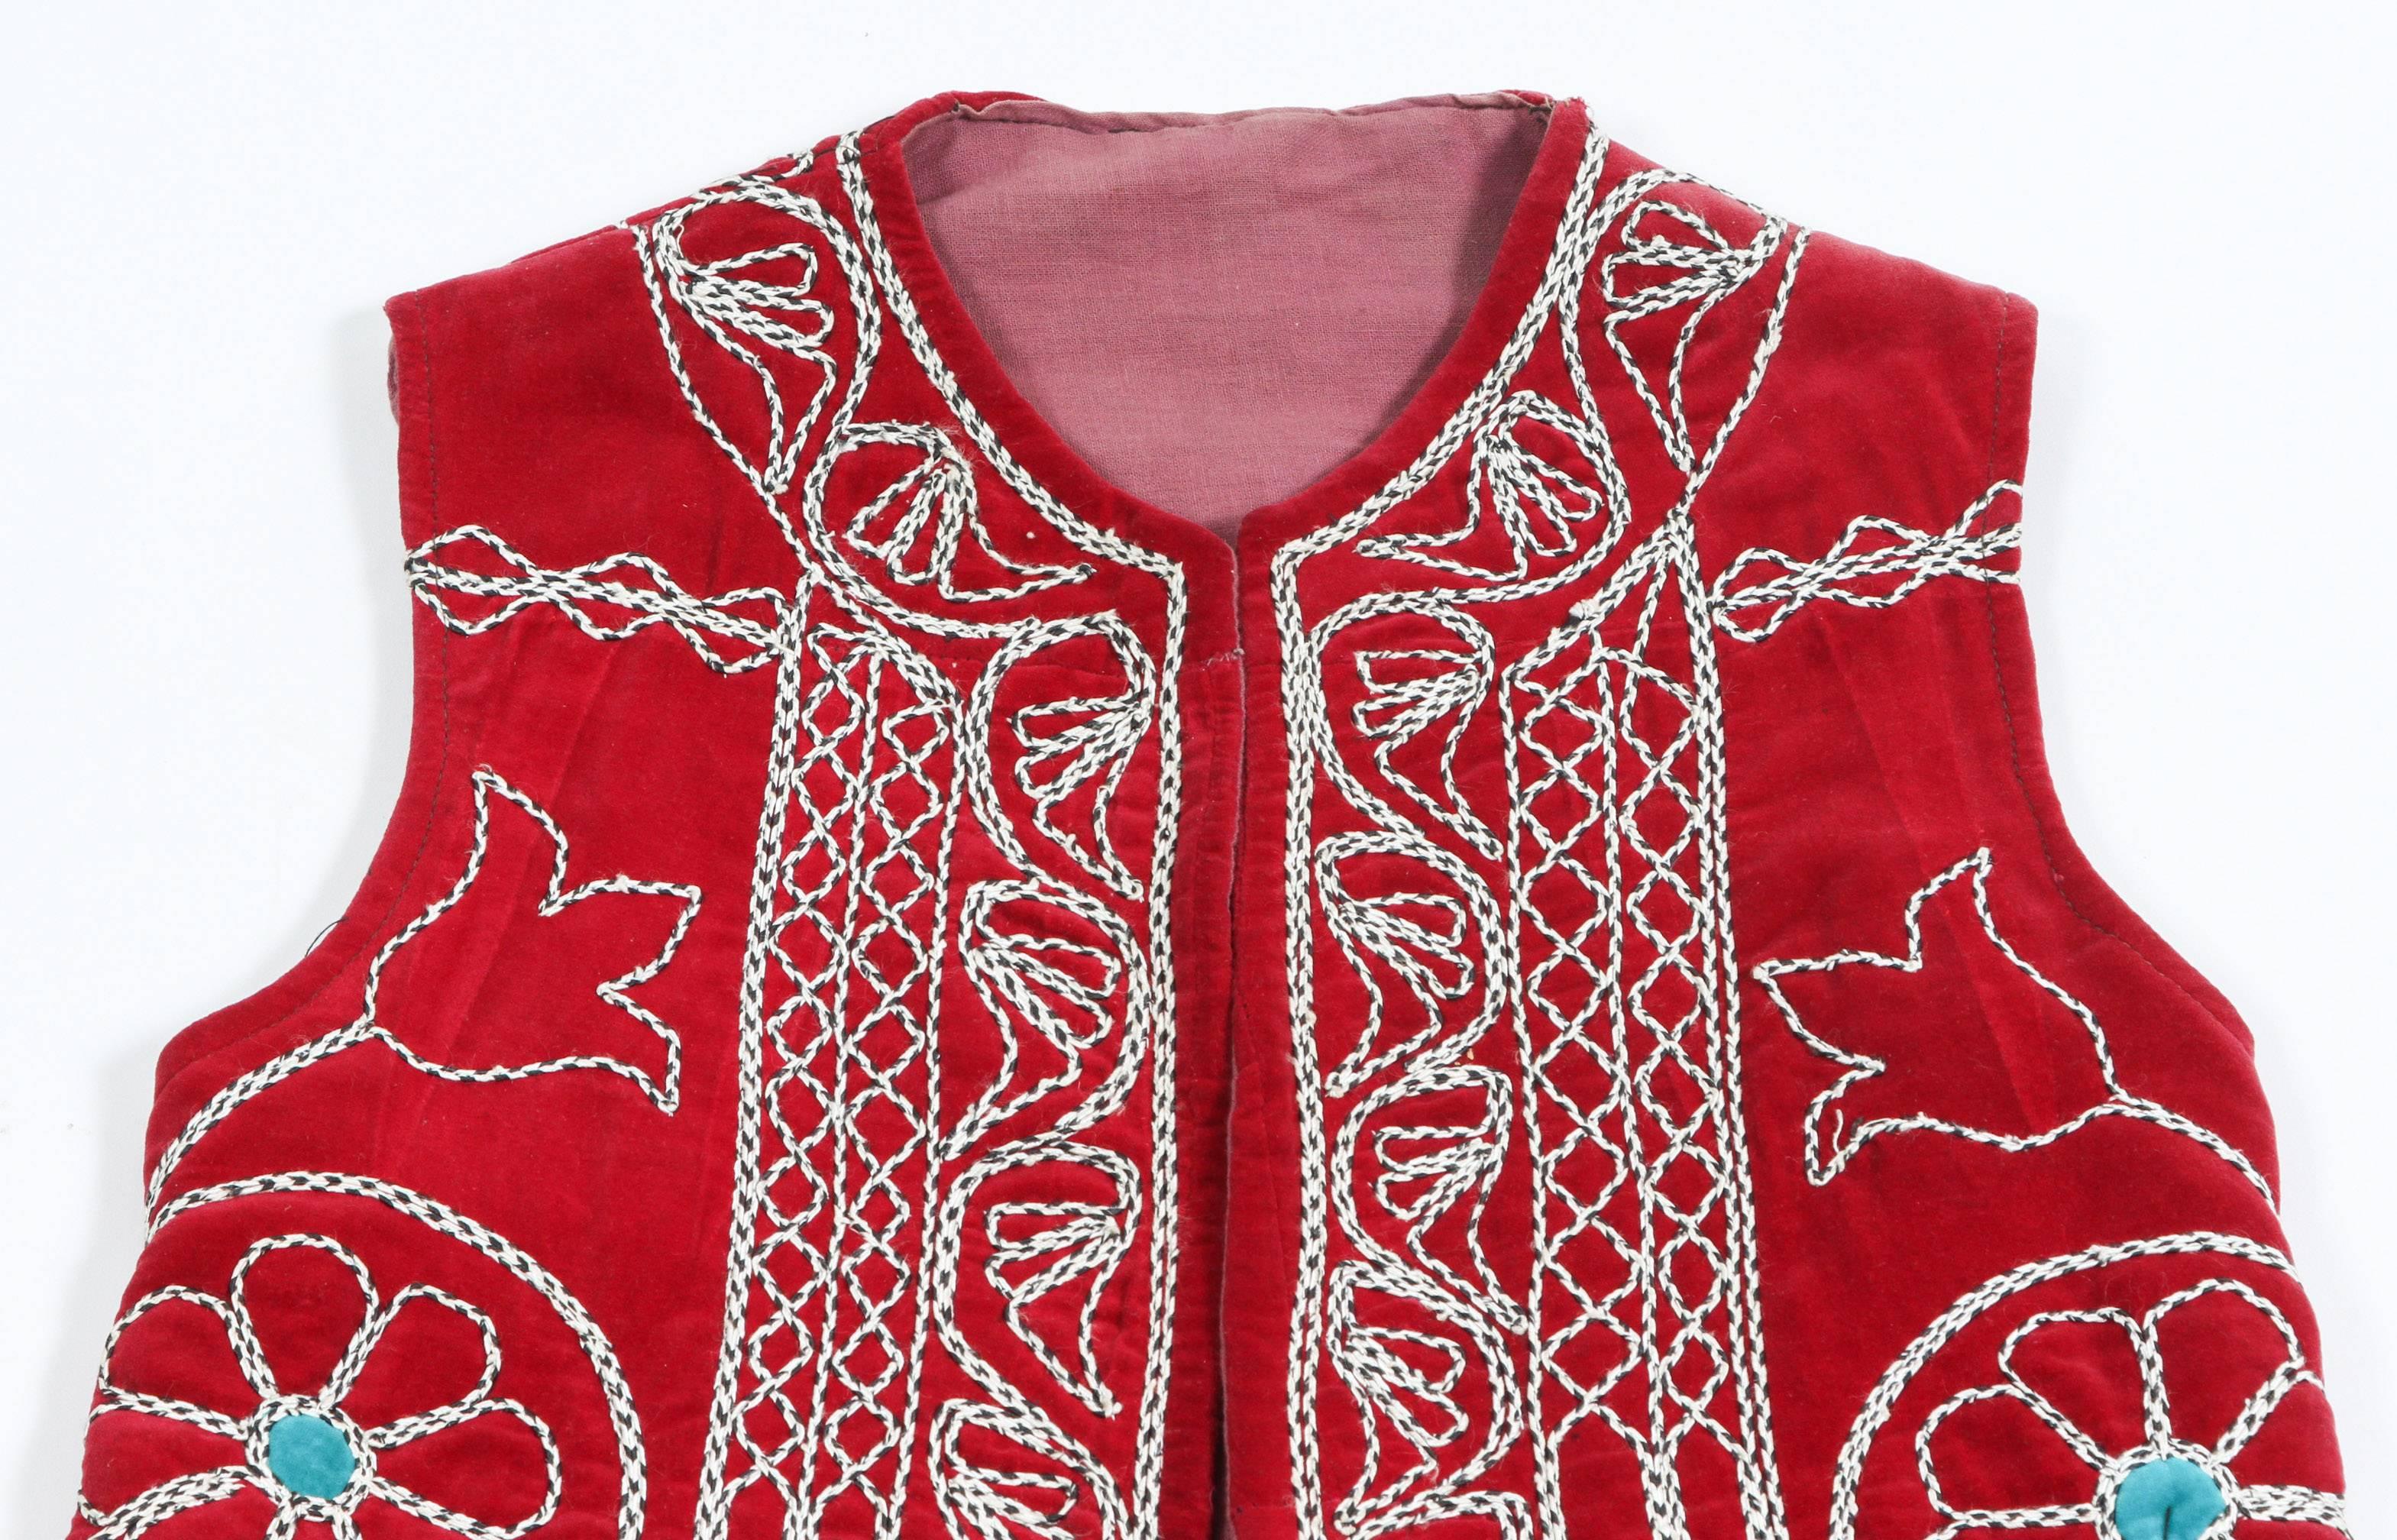 Elegante lange türkische Weste mit farbenfrohem Muster aus geometrischen Motiven auf rotem Grund.
Teil der türkischen zeremoniellen Volkstracht.
Die Motive auf der offenen Jacke sind mit weißen Fäden, Blumen und kunstvollen geometrischen Mustern